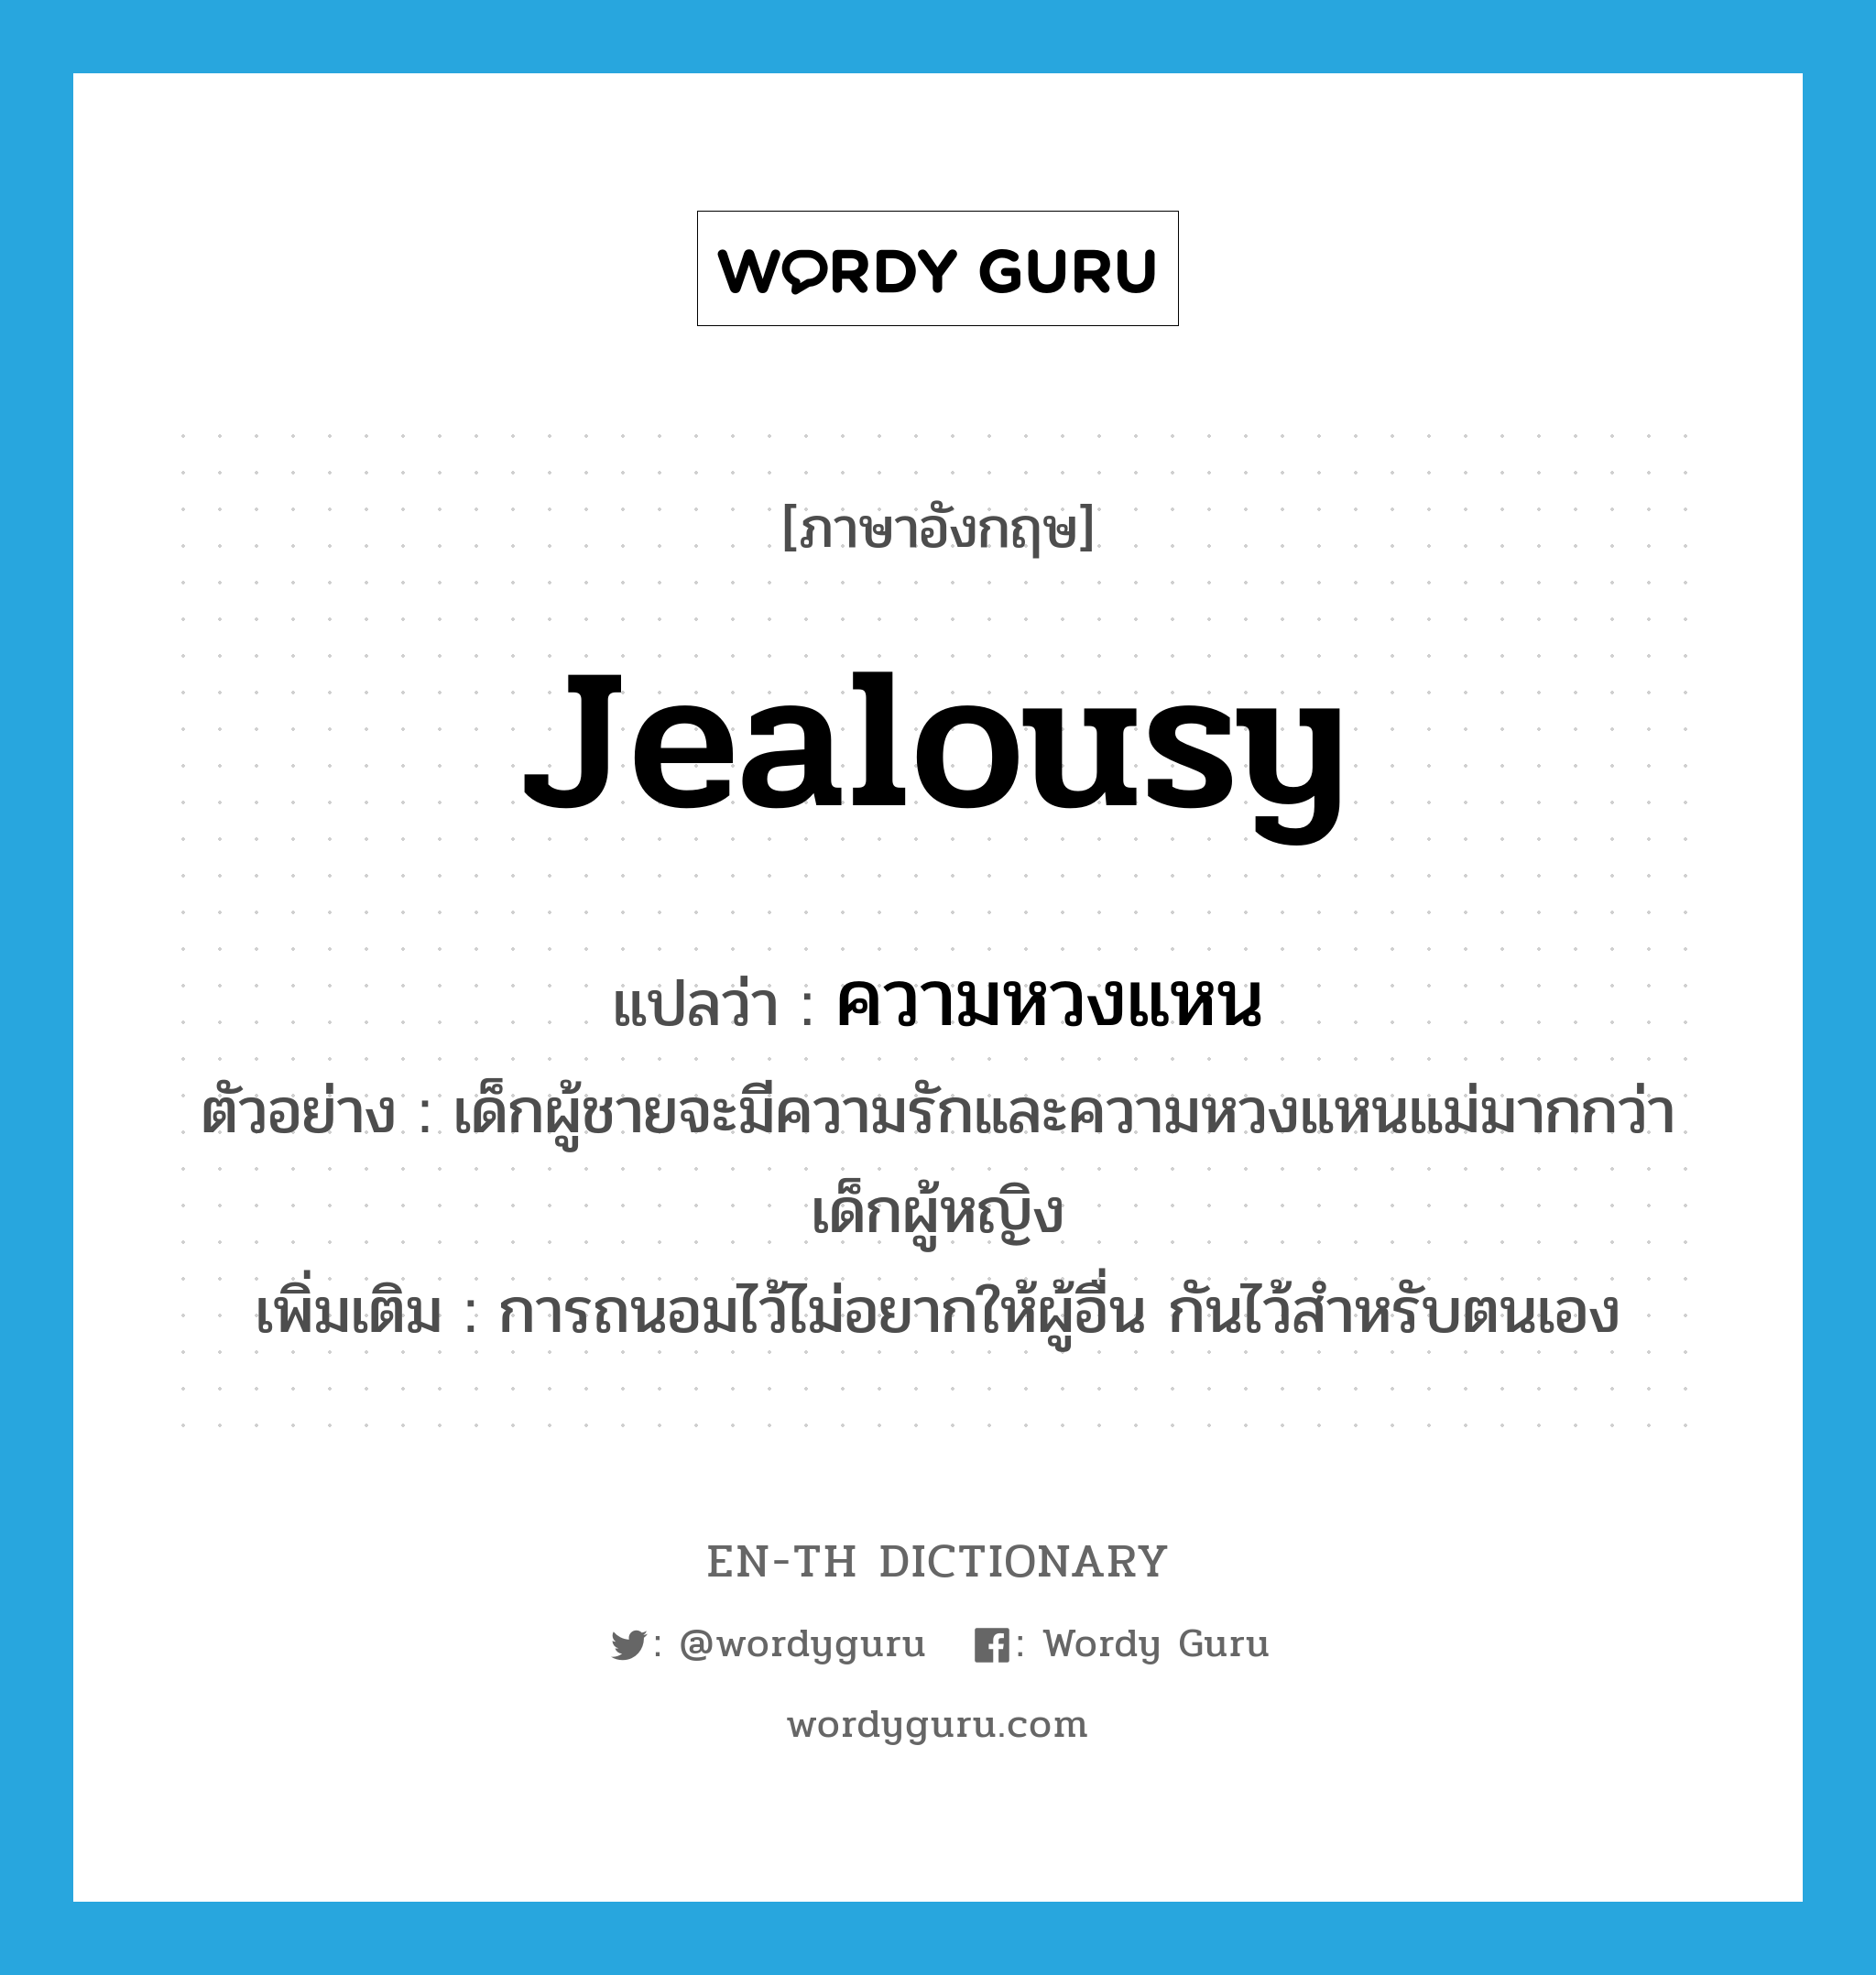 jealousy แปลว่า?, คำศัพท์ภาษาอังกฤษ jealousy แปลว่า ความหวงแหน ประเภท N ตัวอย่าง เด็กผู้ชายจะมีความรักและความหวงแหนแม่มากกว่าเด็กผู้หญิง เพิ่มเติม การถนอมไว้ไม่อยากให้ผู้อื่น กันไว้สำหรับตนเอง หมวด N